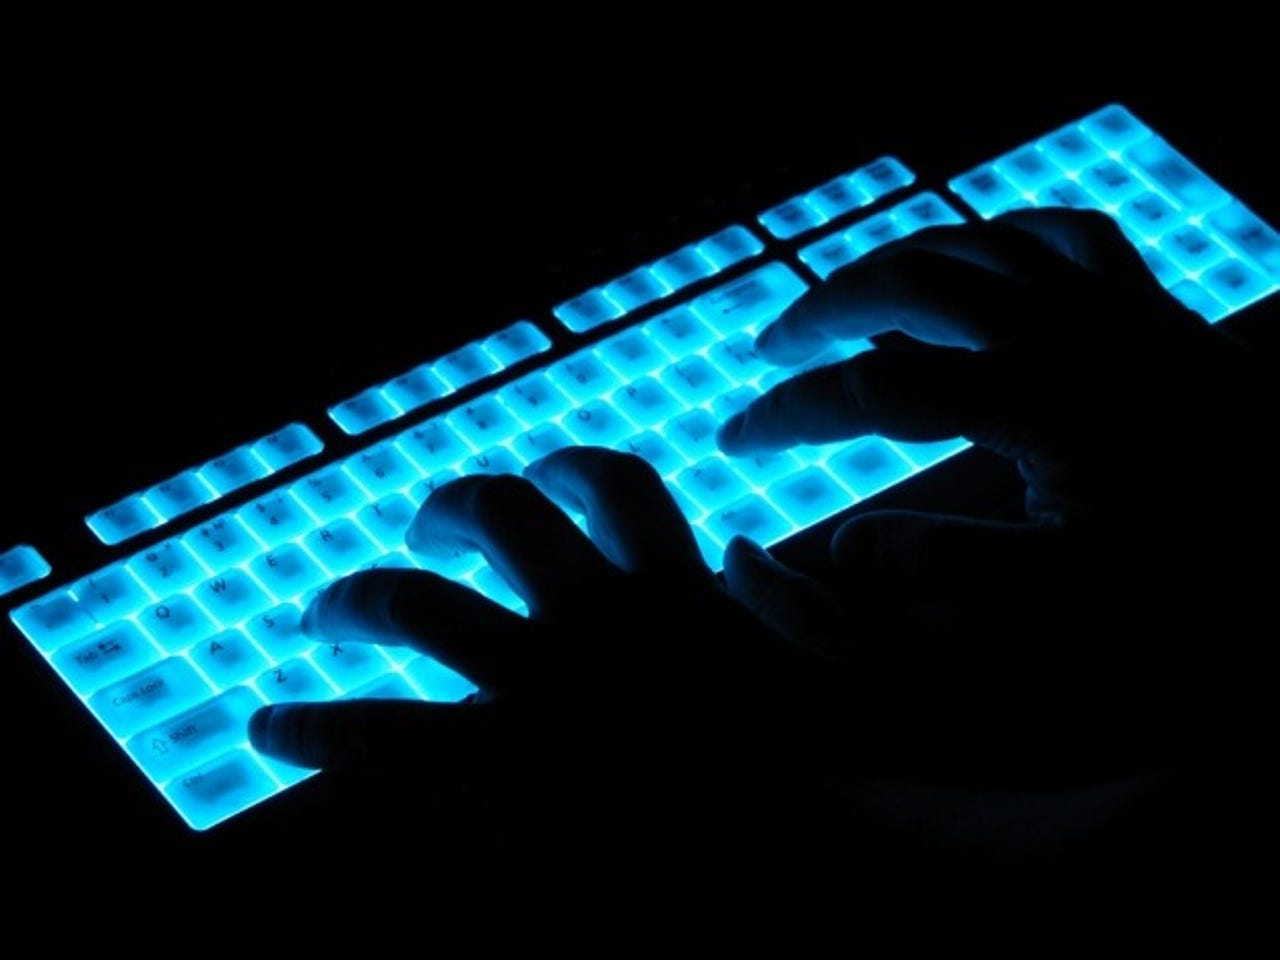 glowing-keyboard-hacker-security-620x465.jpg